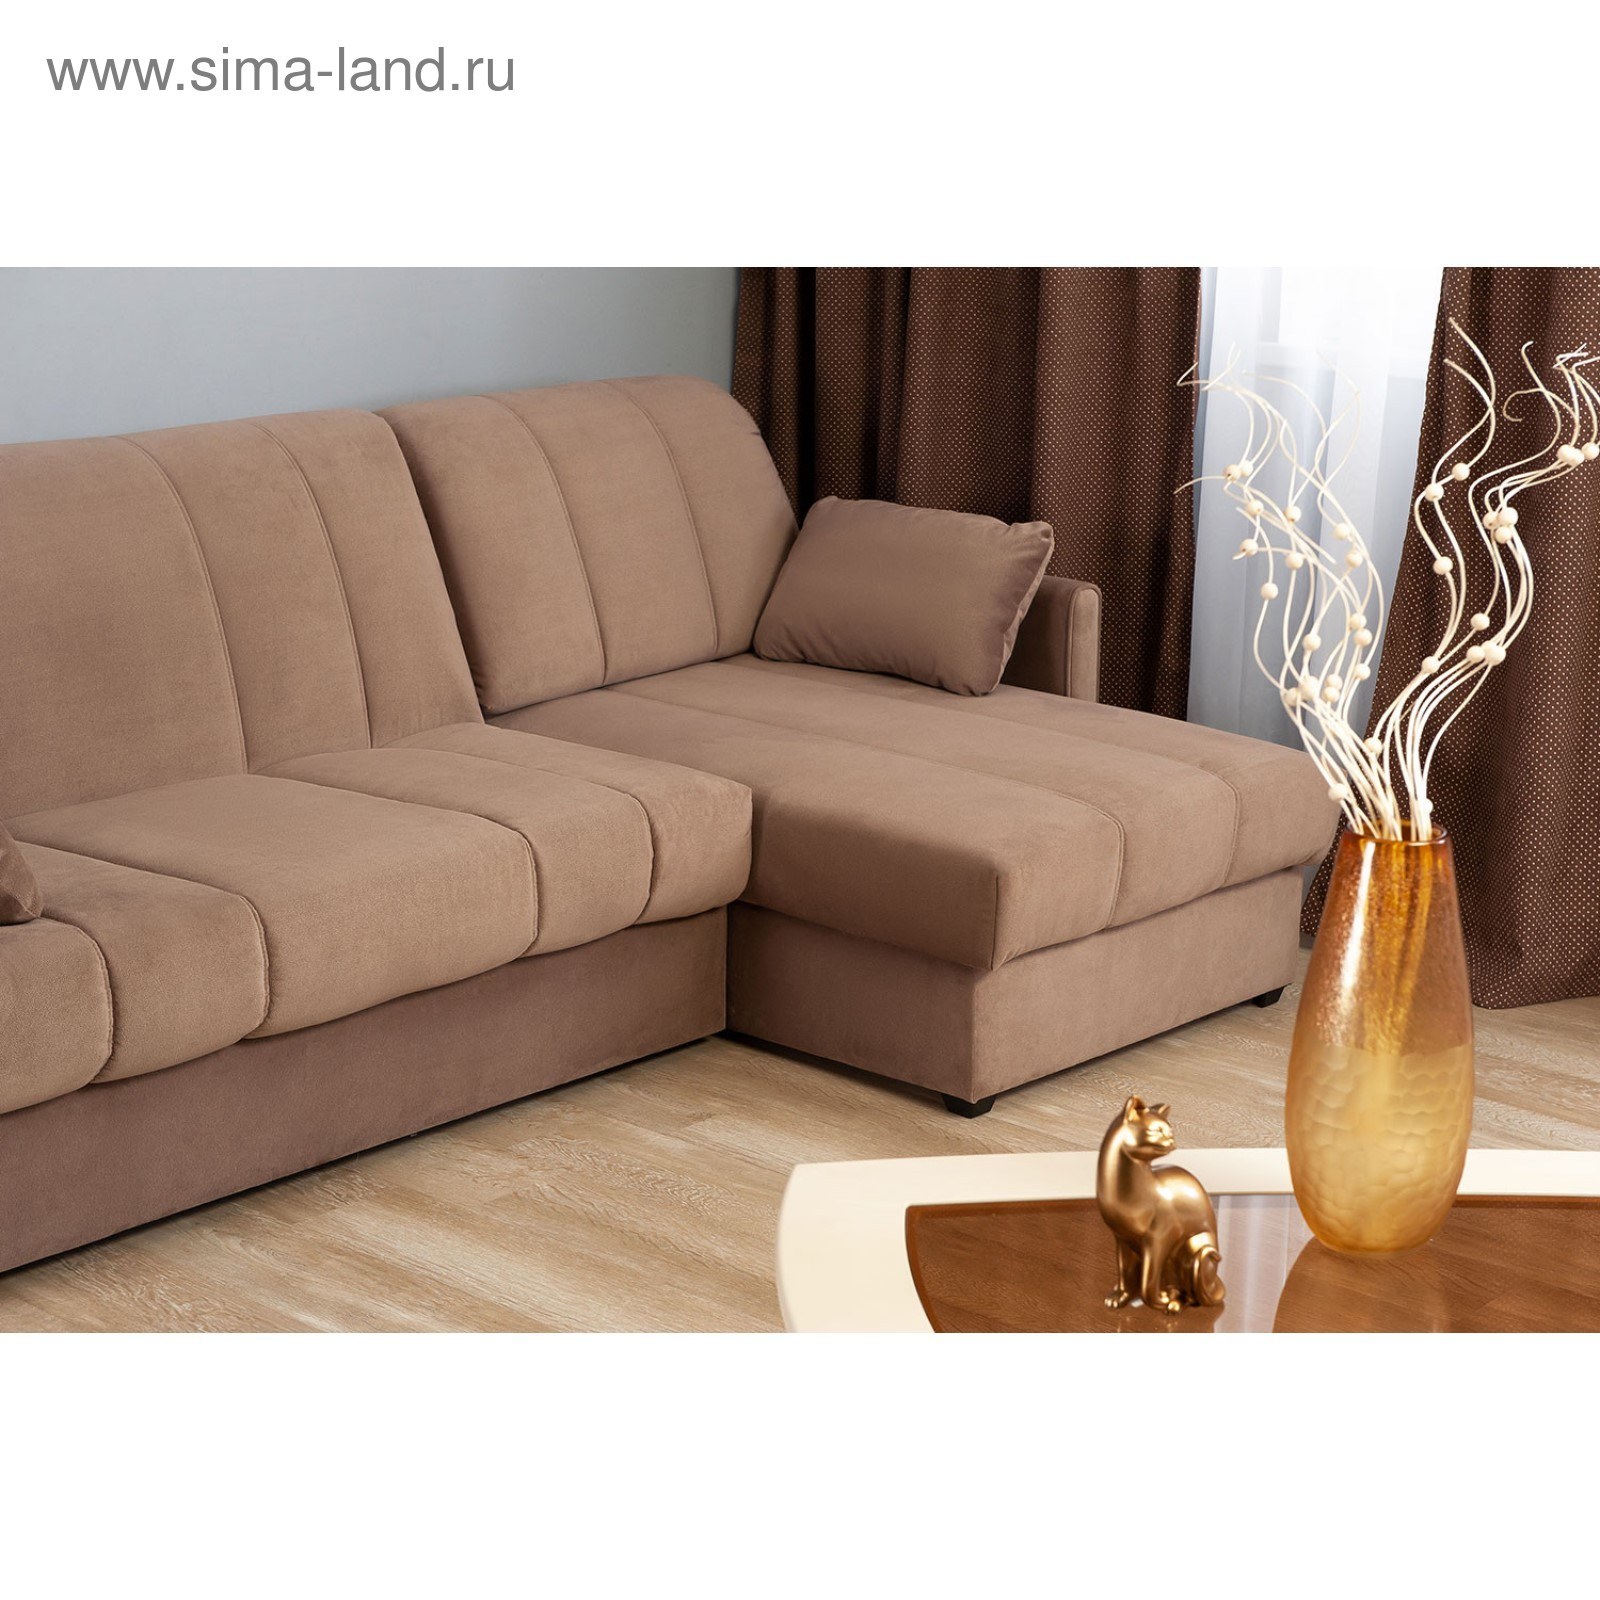 Модели угловых диванов. Hoff угловой диван модель 2081. Угловые диваны в Hoff Hoff. Мебель-хофф диваны угловые. Диван хофф угловой коричневый.